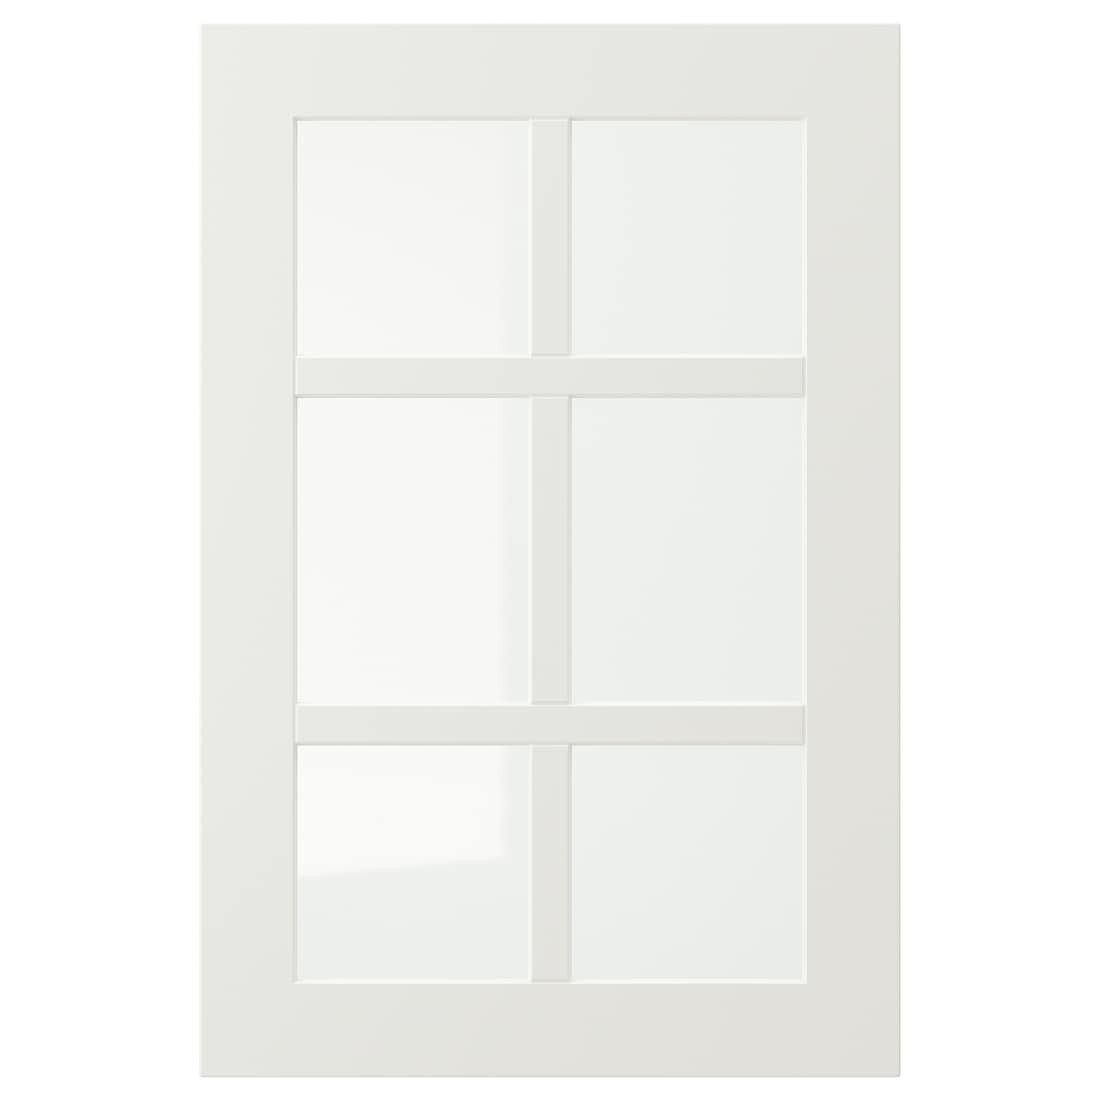 STENSUND СТЕНСУНД Стеклянная дверь, белый, 40x60 см